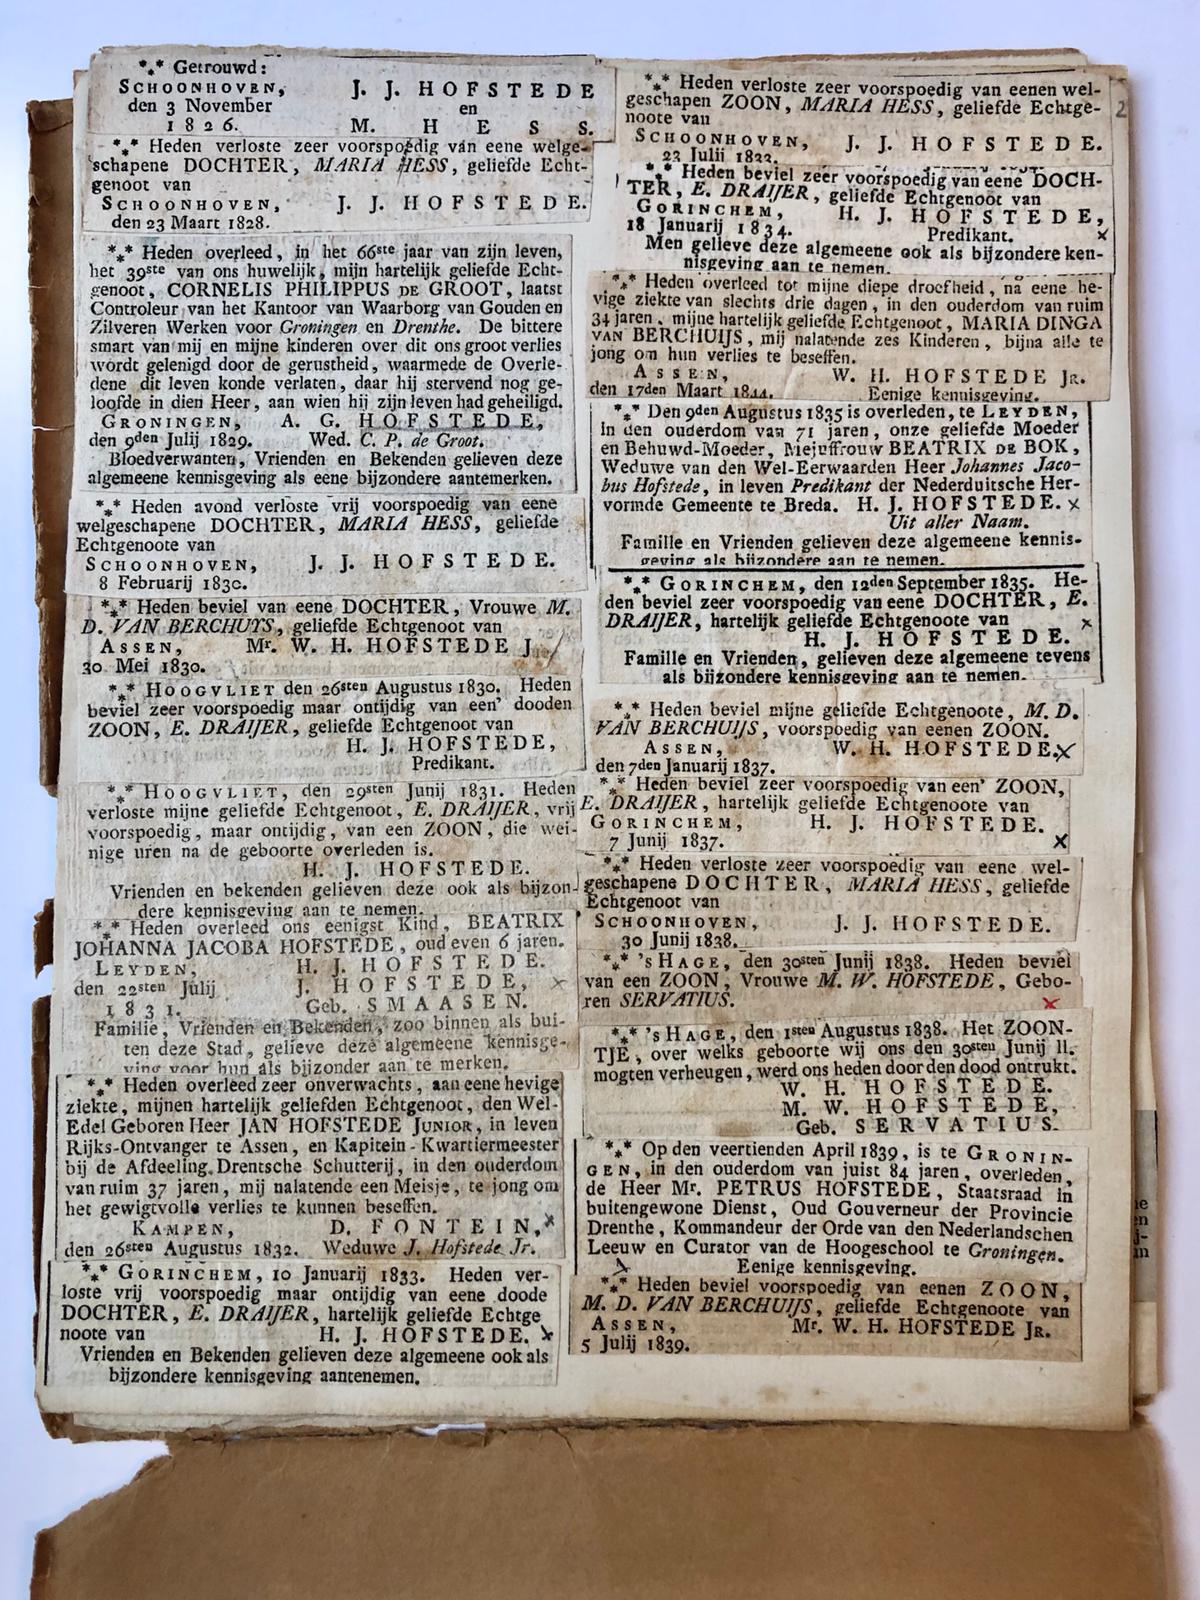  - [Family newspaper articles] Verzameling familie advertenties uit kranten betr. de familie Hofstede, 1796-1916, ca. 150 stuks.